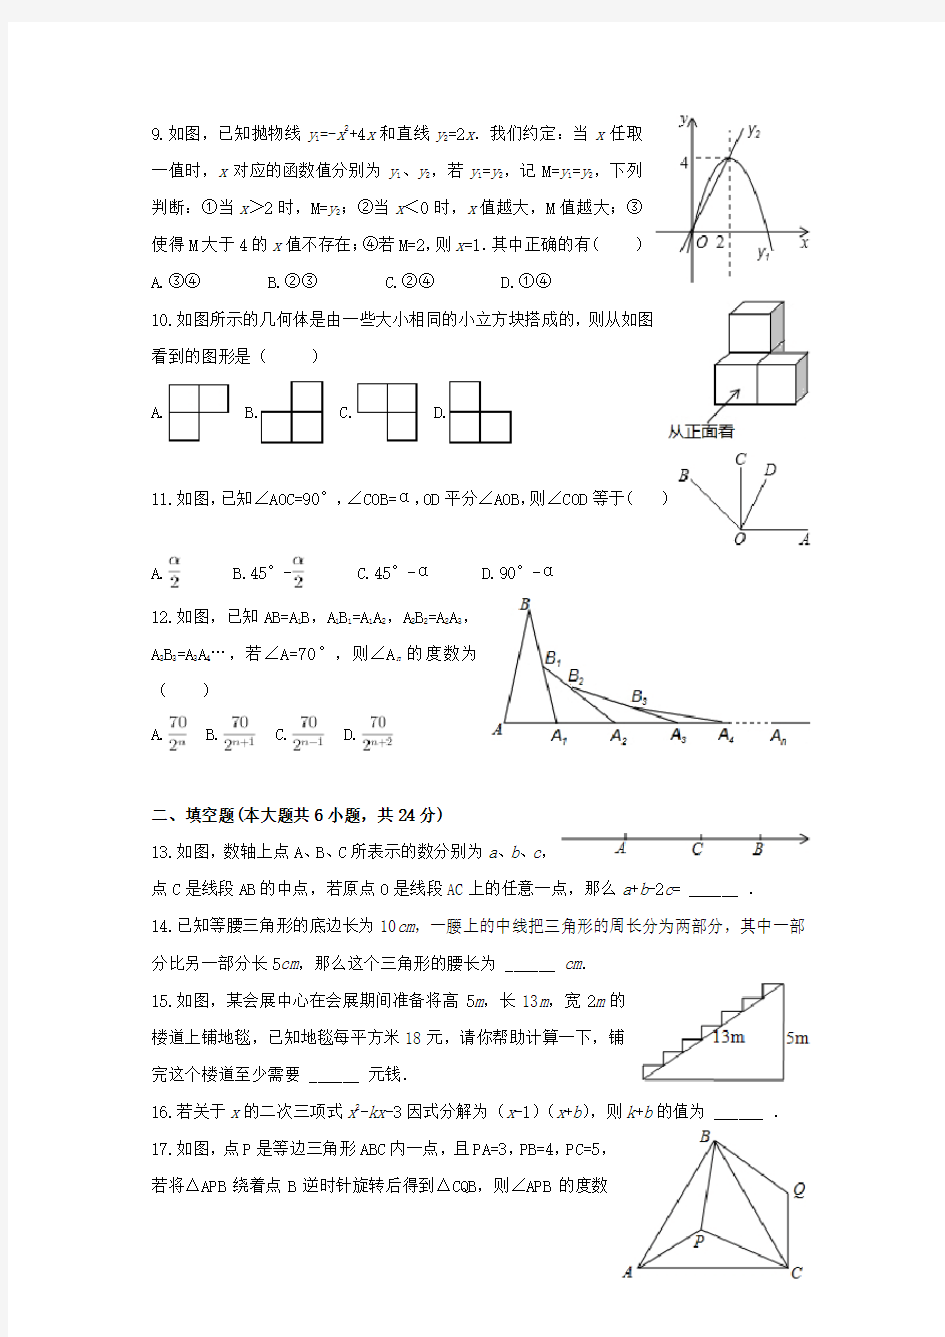 【2020年】山东省中考数学模拟试题(含答案)